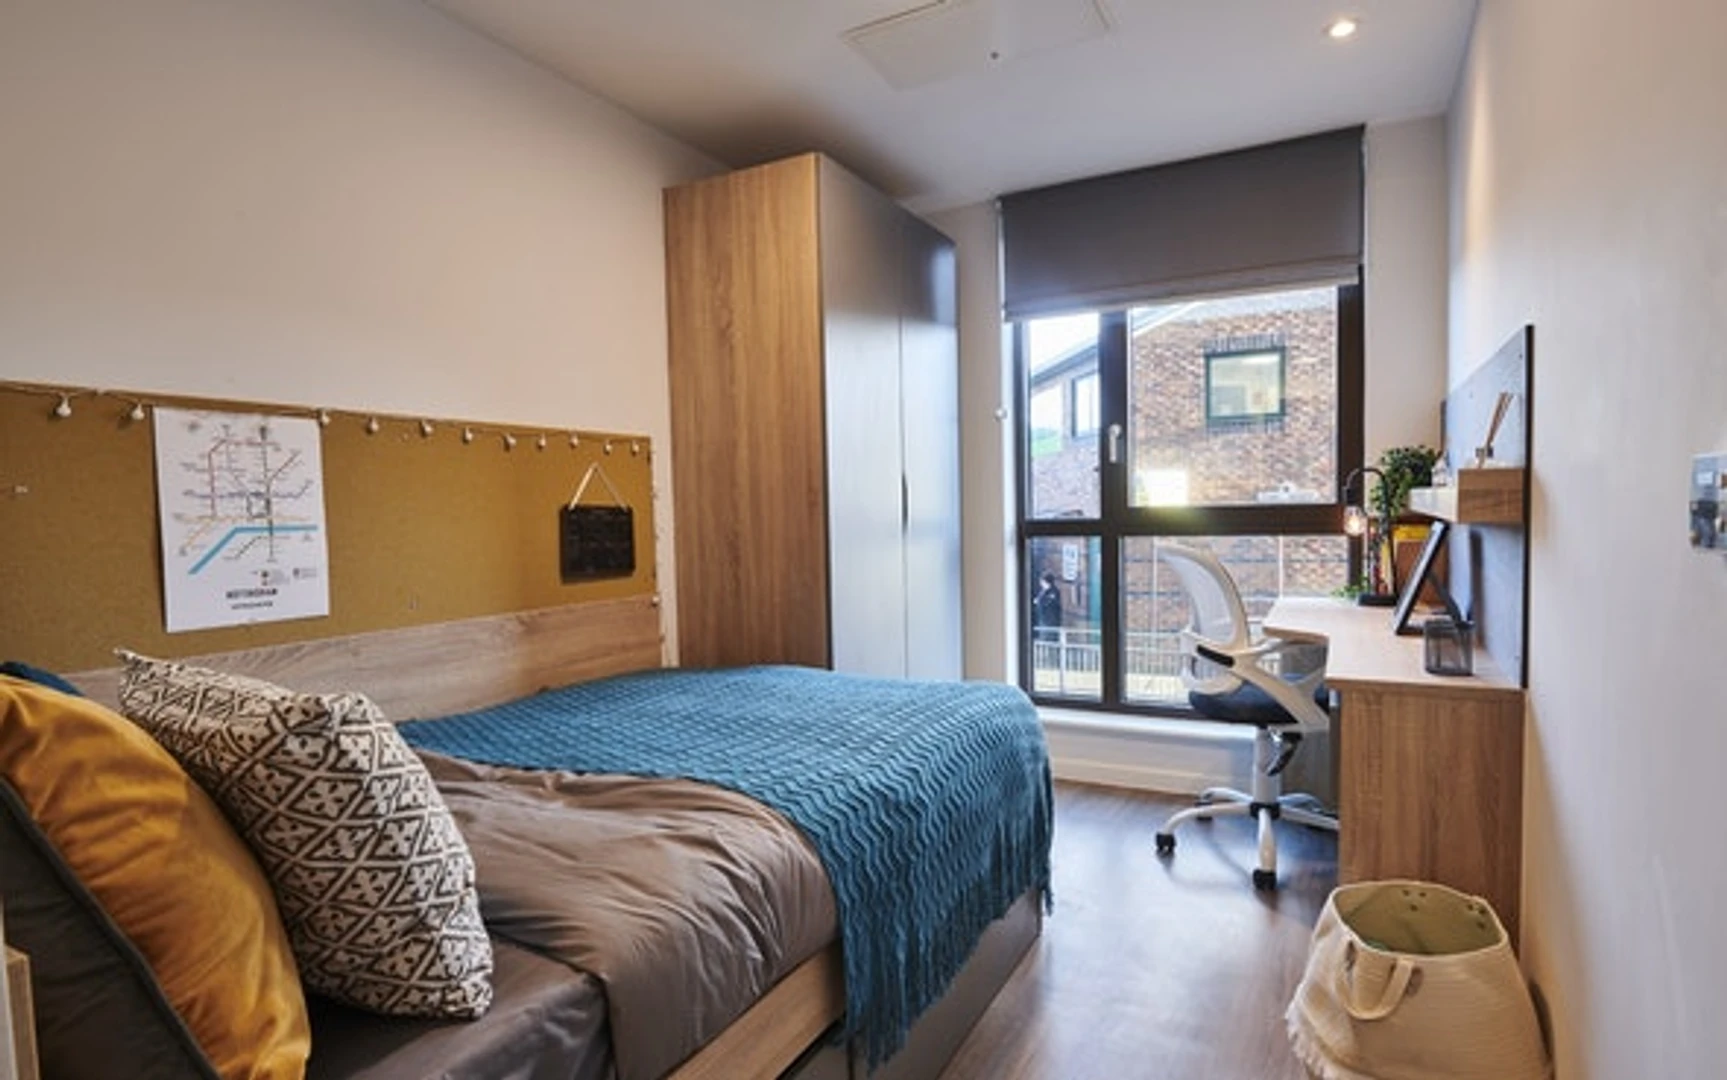 Zimmer mit Doppelbett zu vermieten Nottingham